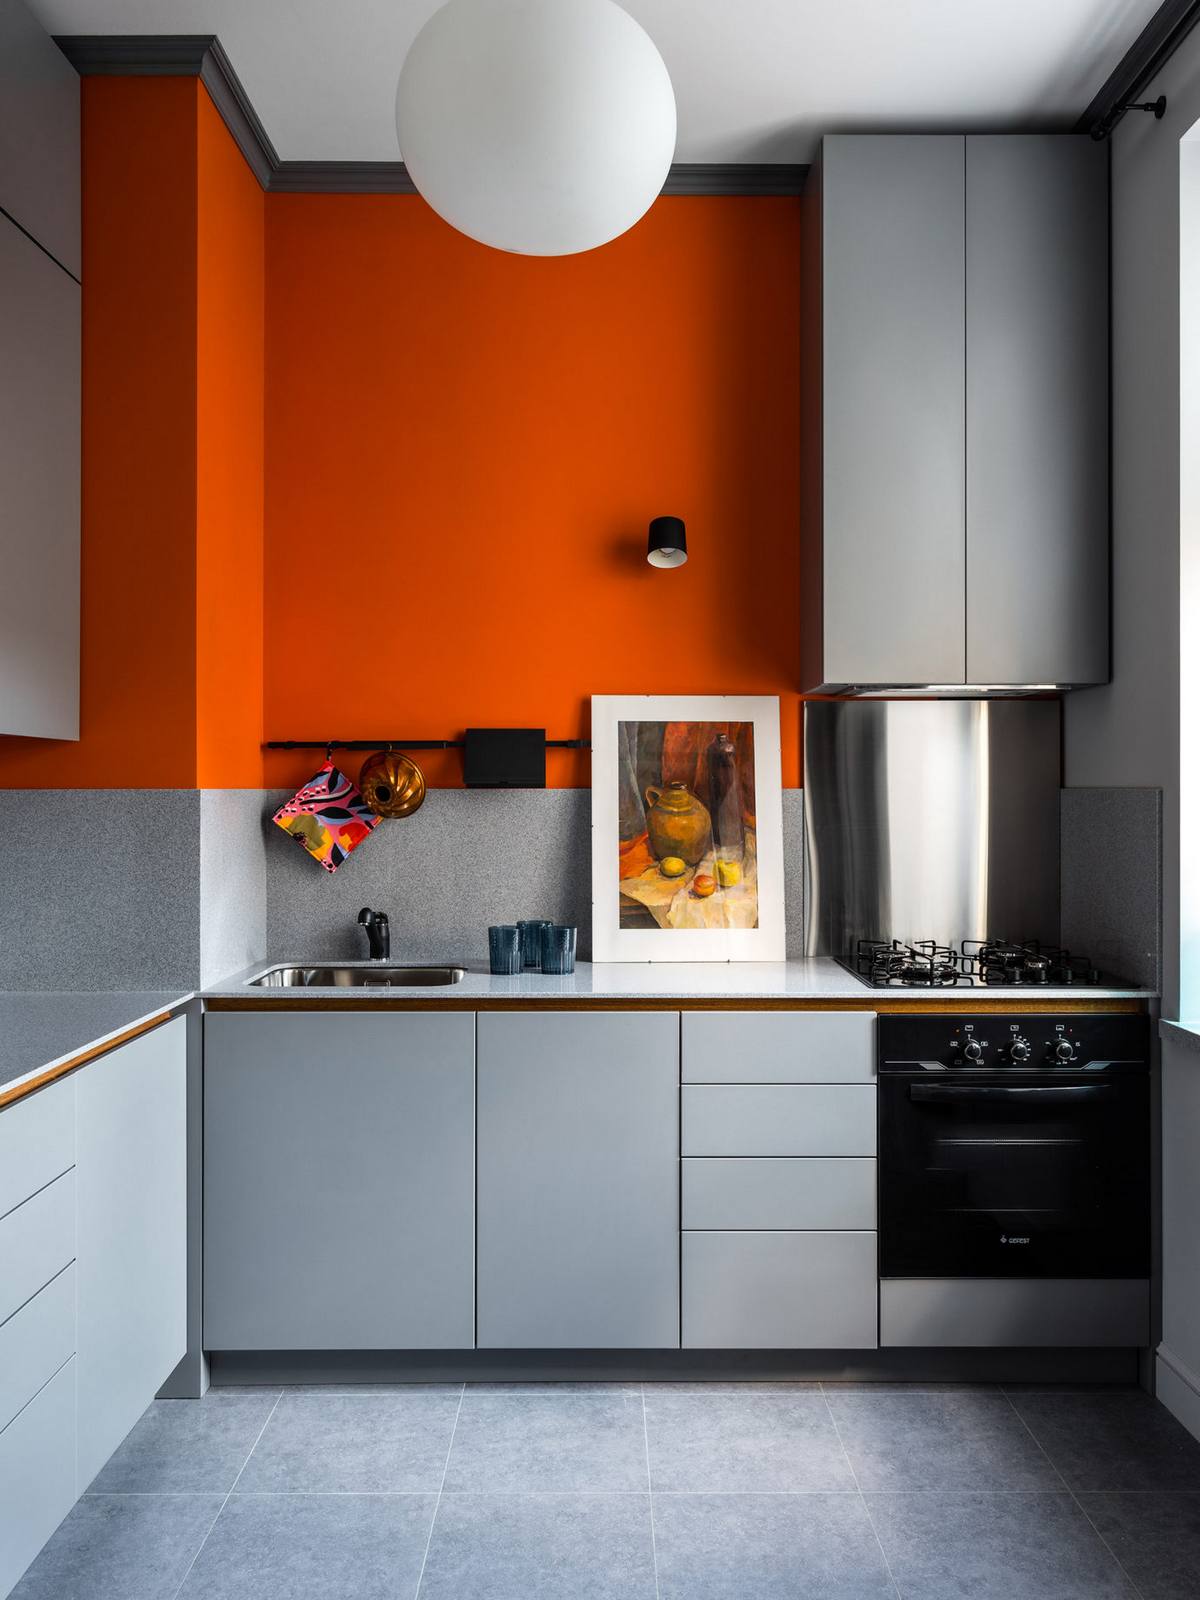 NTK lựa chọn thiết kế tủ bếp chữ L để phù hợp với cấu trúc của căn hộ nhỏ, vừa đảm bảo sự thuận tiện cho người đứng bếp khi thao tác. Bên cạnh gam màu xám chủ đạo, chúng ta nhanh chóng bị thu hút bởi sơn tường màu cam nồng nàn, tươi trẻ.